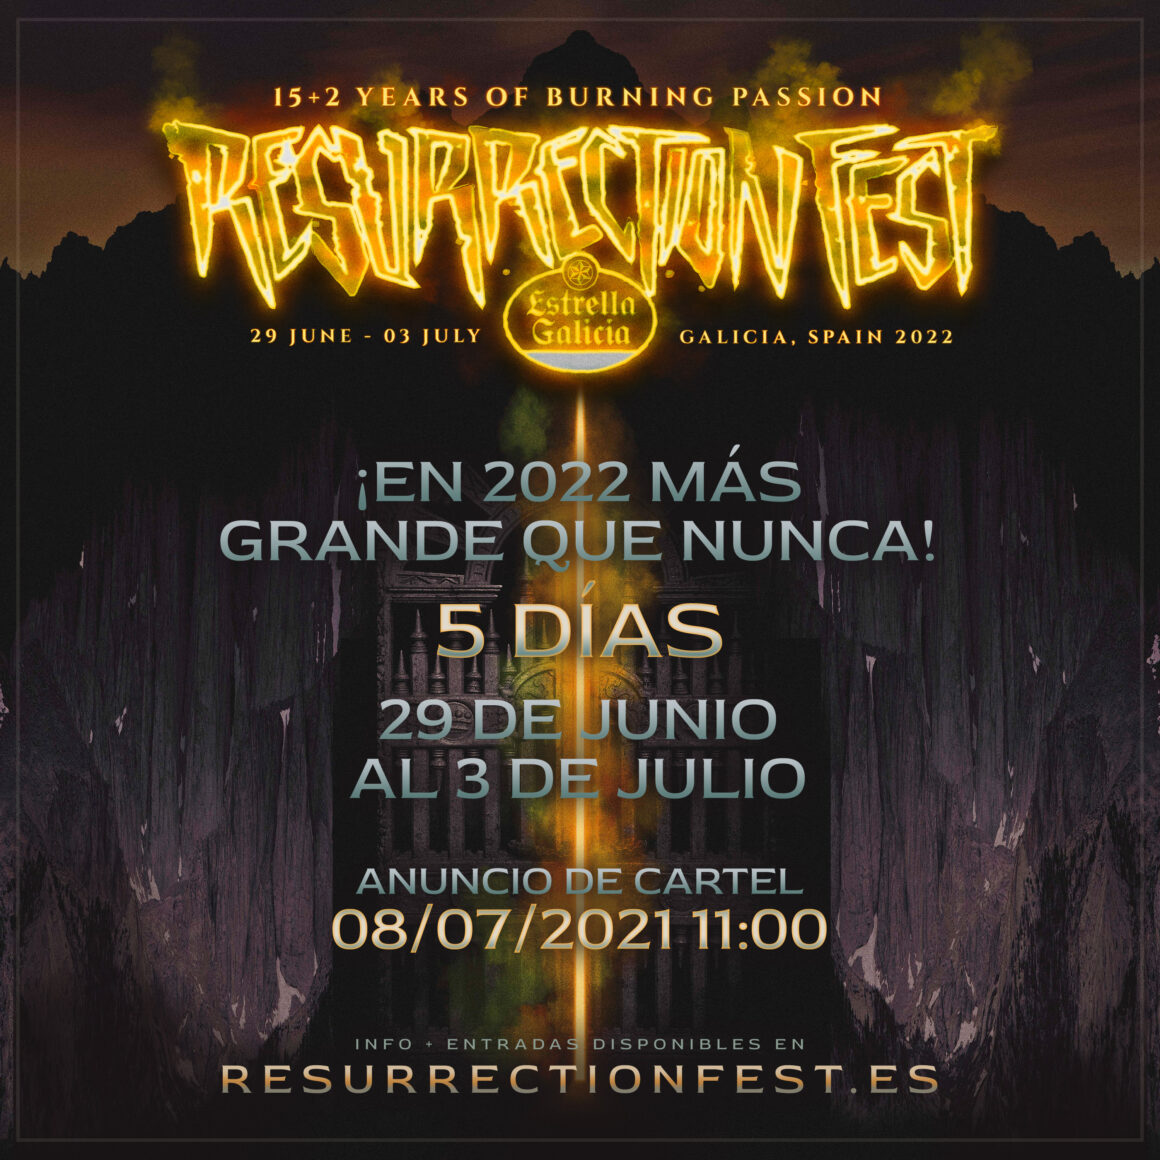 El Resurrection Fest Estrella Galicia 2022 tendrá 5 días: del 29 de junio al 3 de julio